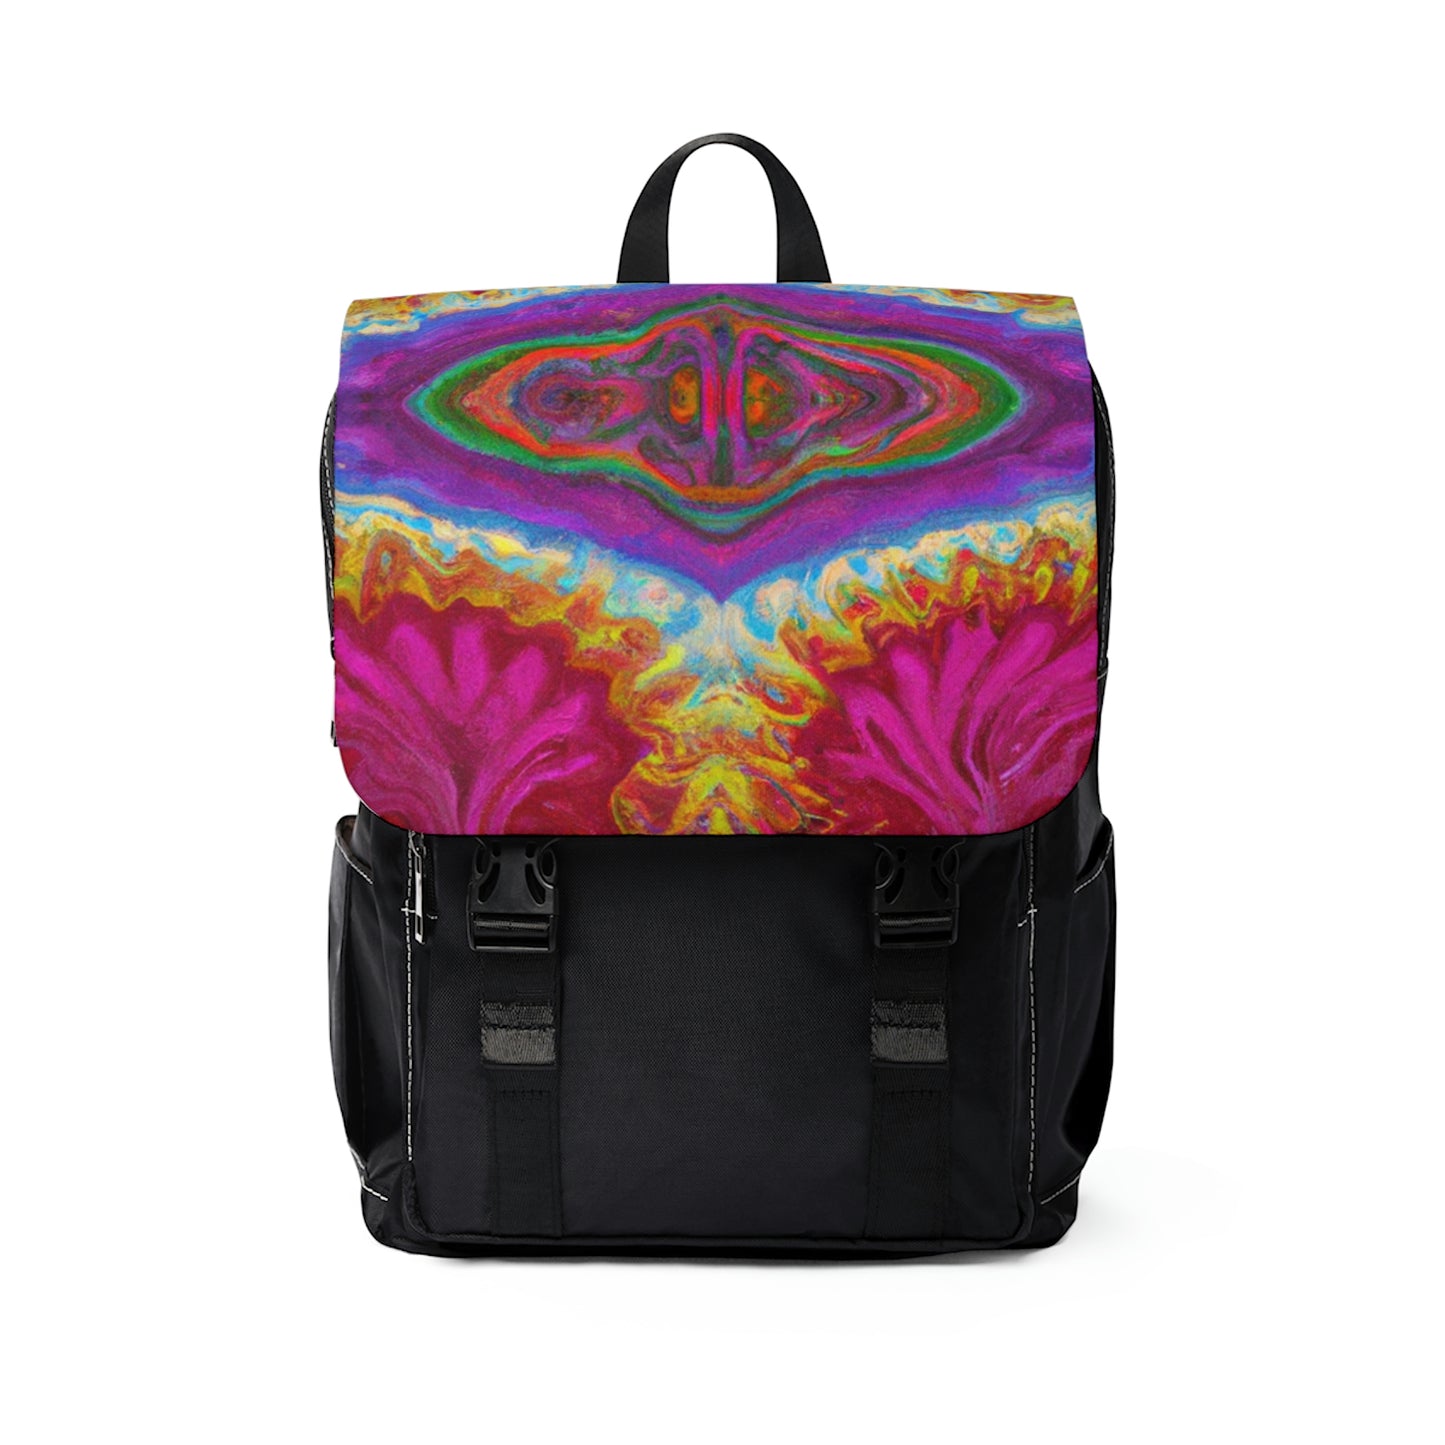 Furmani - Psychedelic Shoulder Travel Backpack Bag